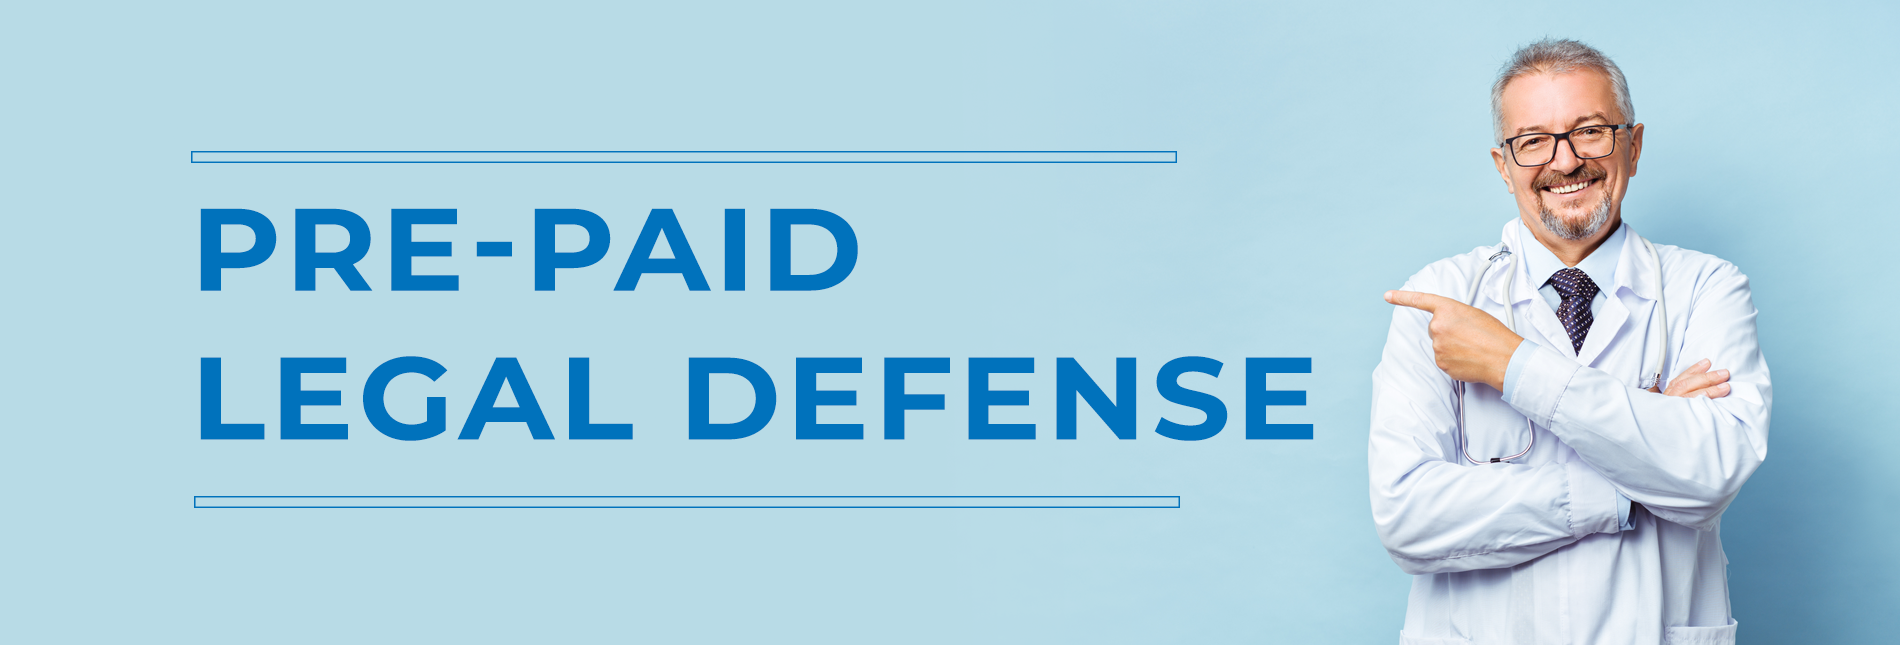 Pre Paid Legal Defense Banner